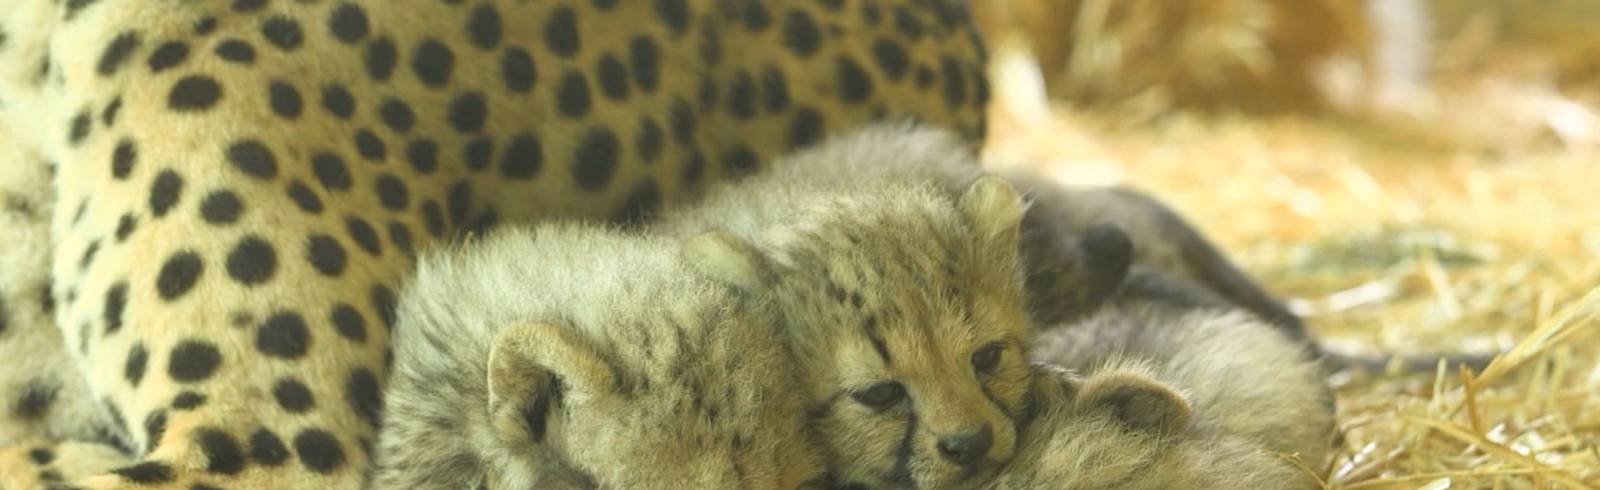 Bezirksflash: Namen für Baby-Geparden gesucht